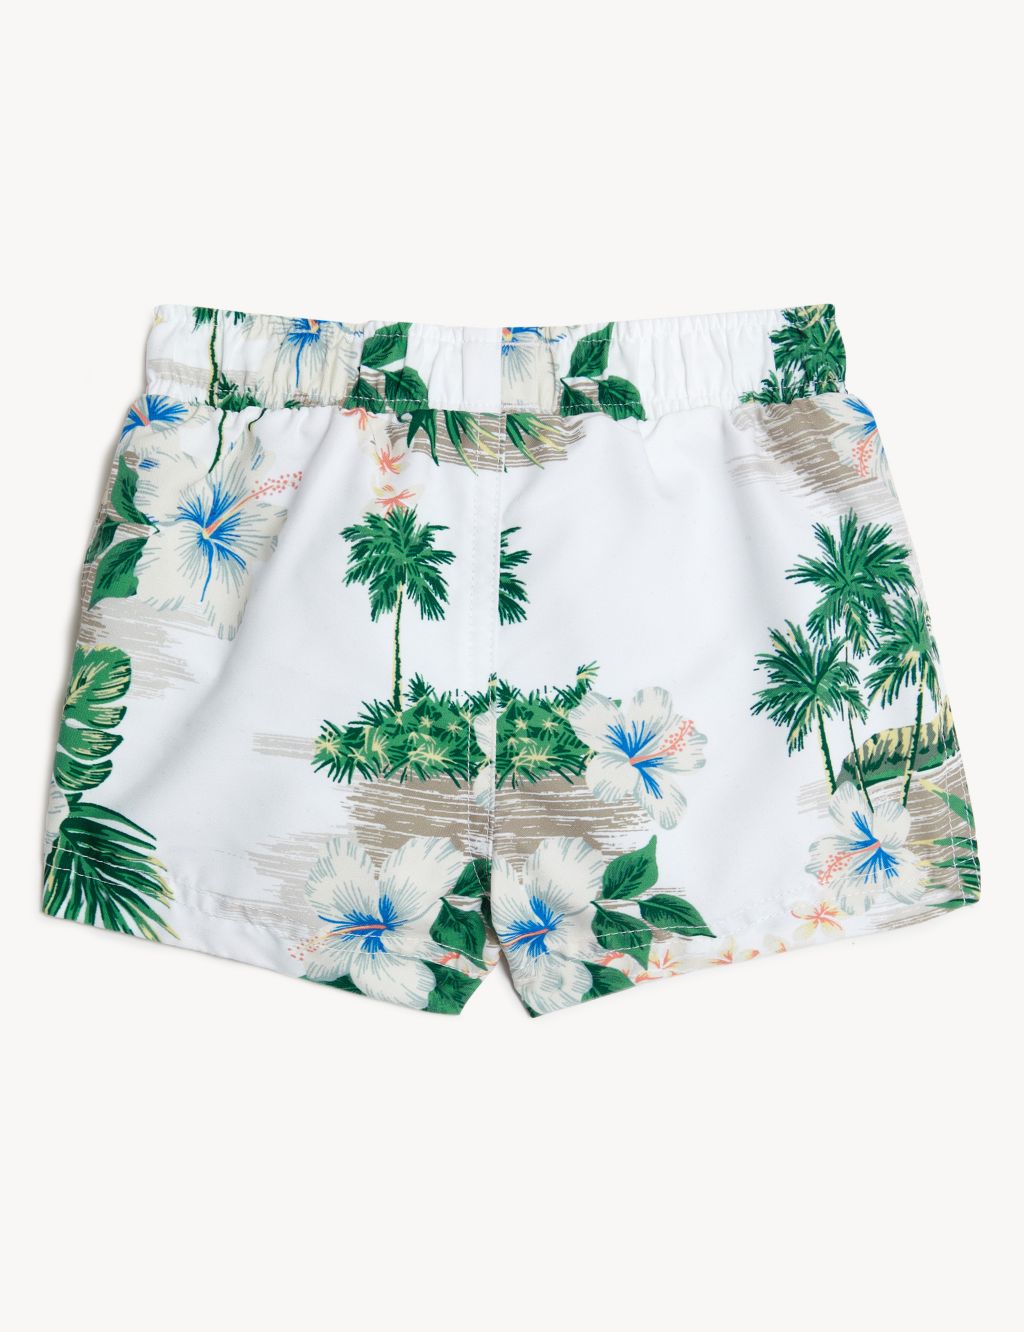 Mini Me Palm Tree Print Swim Shorts (0 - 3 Yrs) image 2